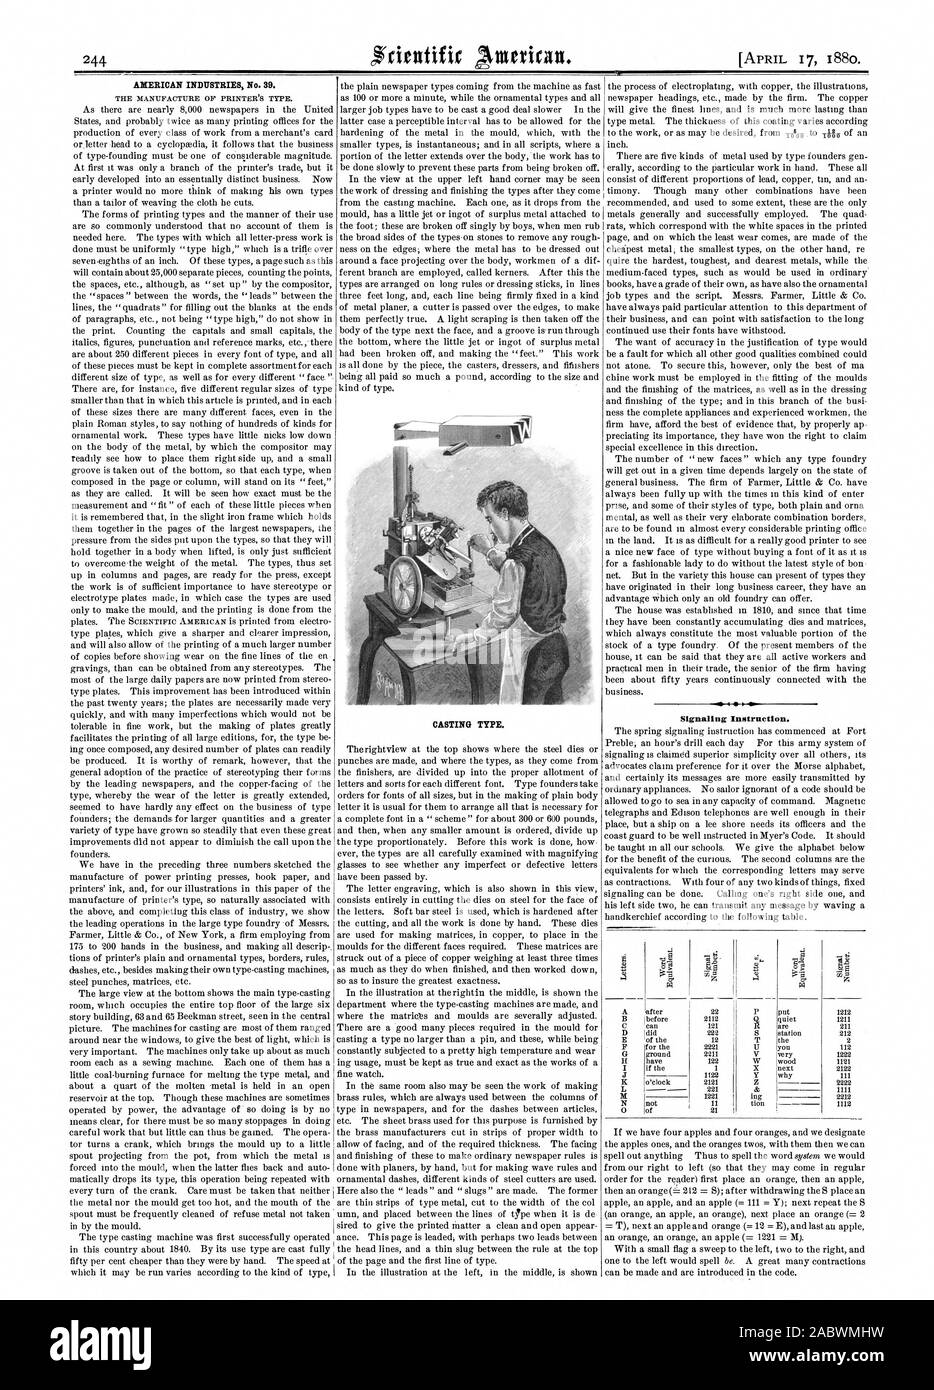 Die amerikanische Industrie Nr. 39. Guss. Signalisierung Anweisung. Eine tiOD 0, Scientific American, 1880-04-17 Stockfoto